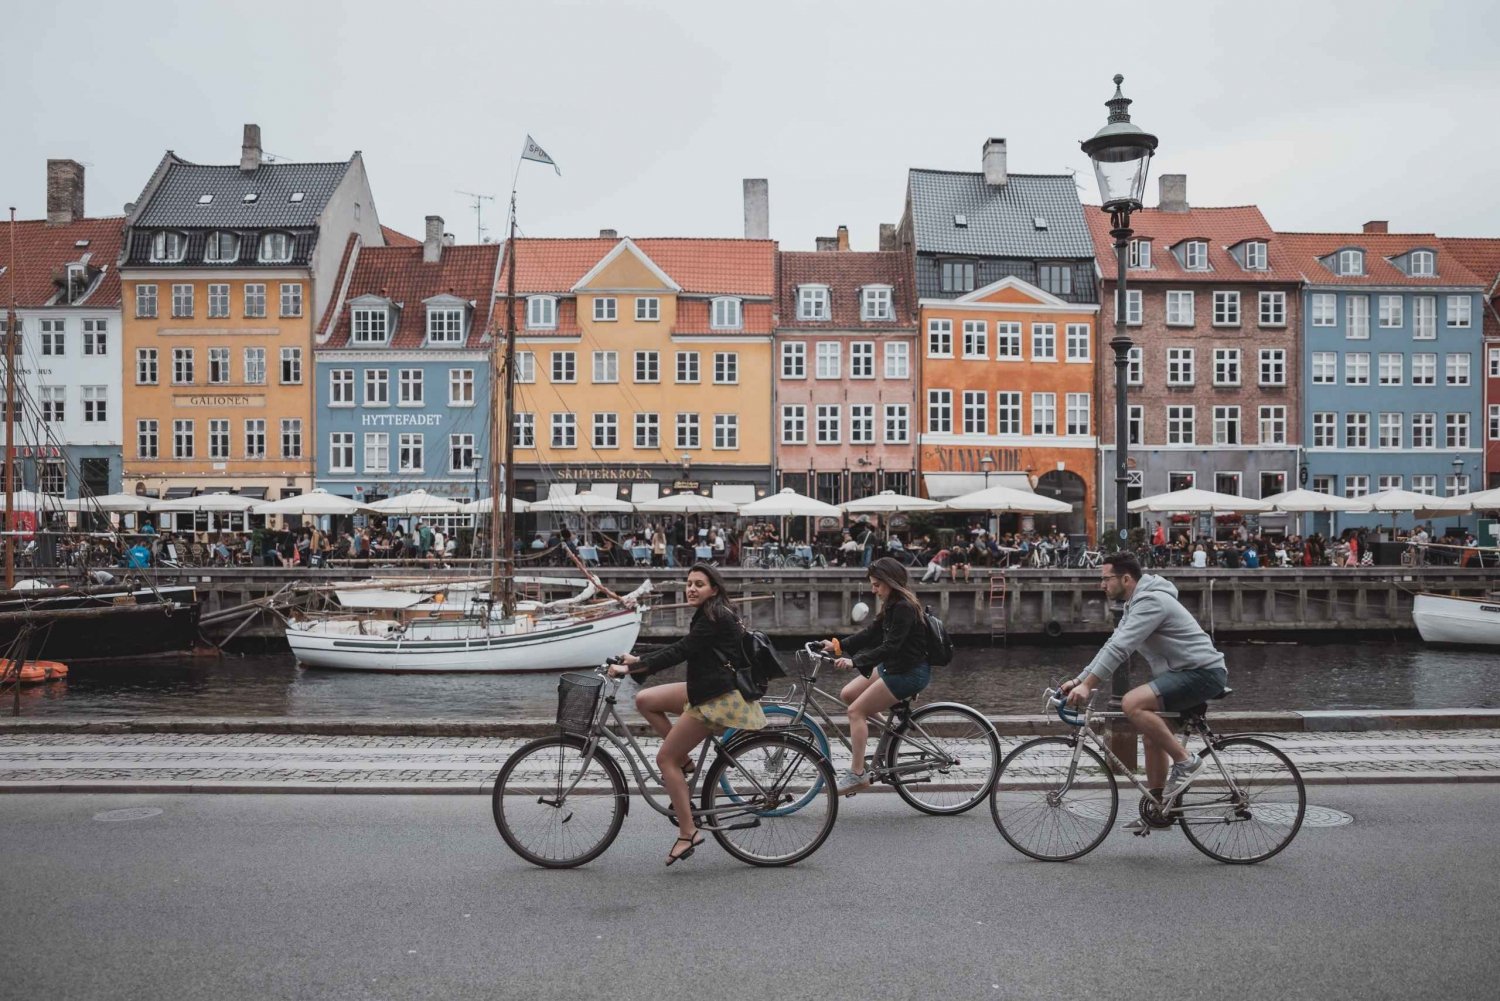 Kopenhagen: Express wandeling met een local in 60 minuten